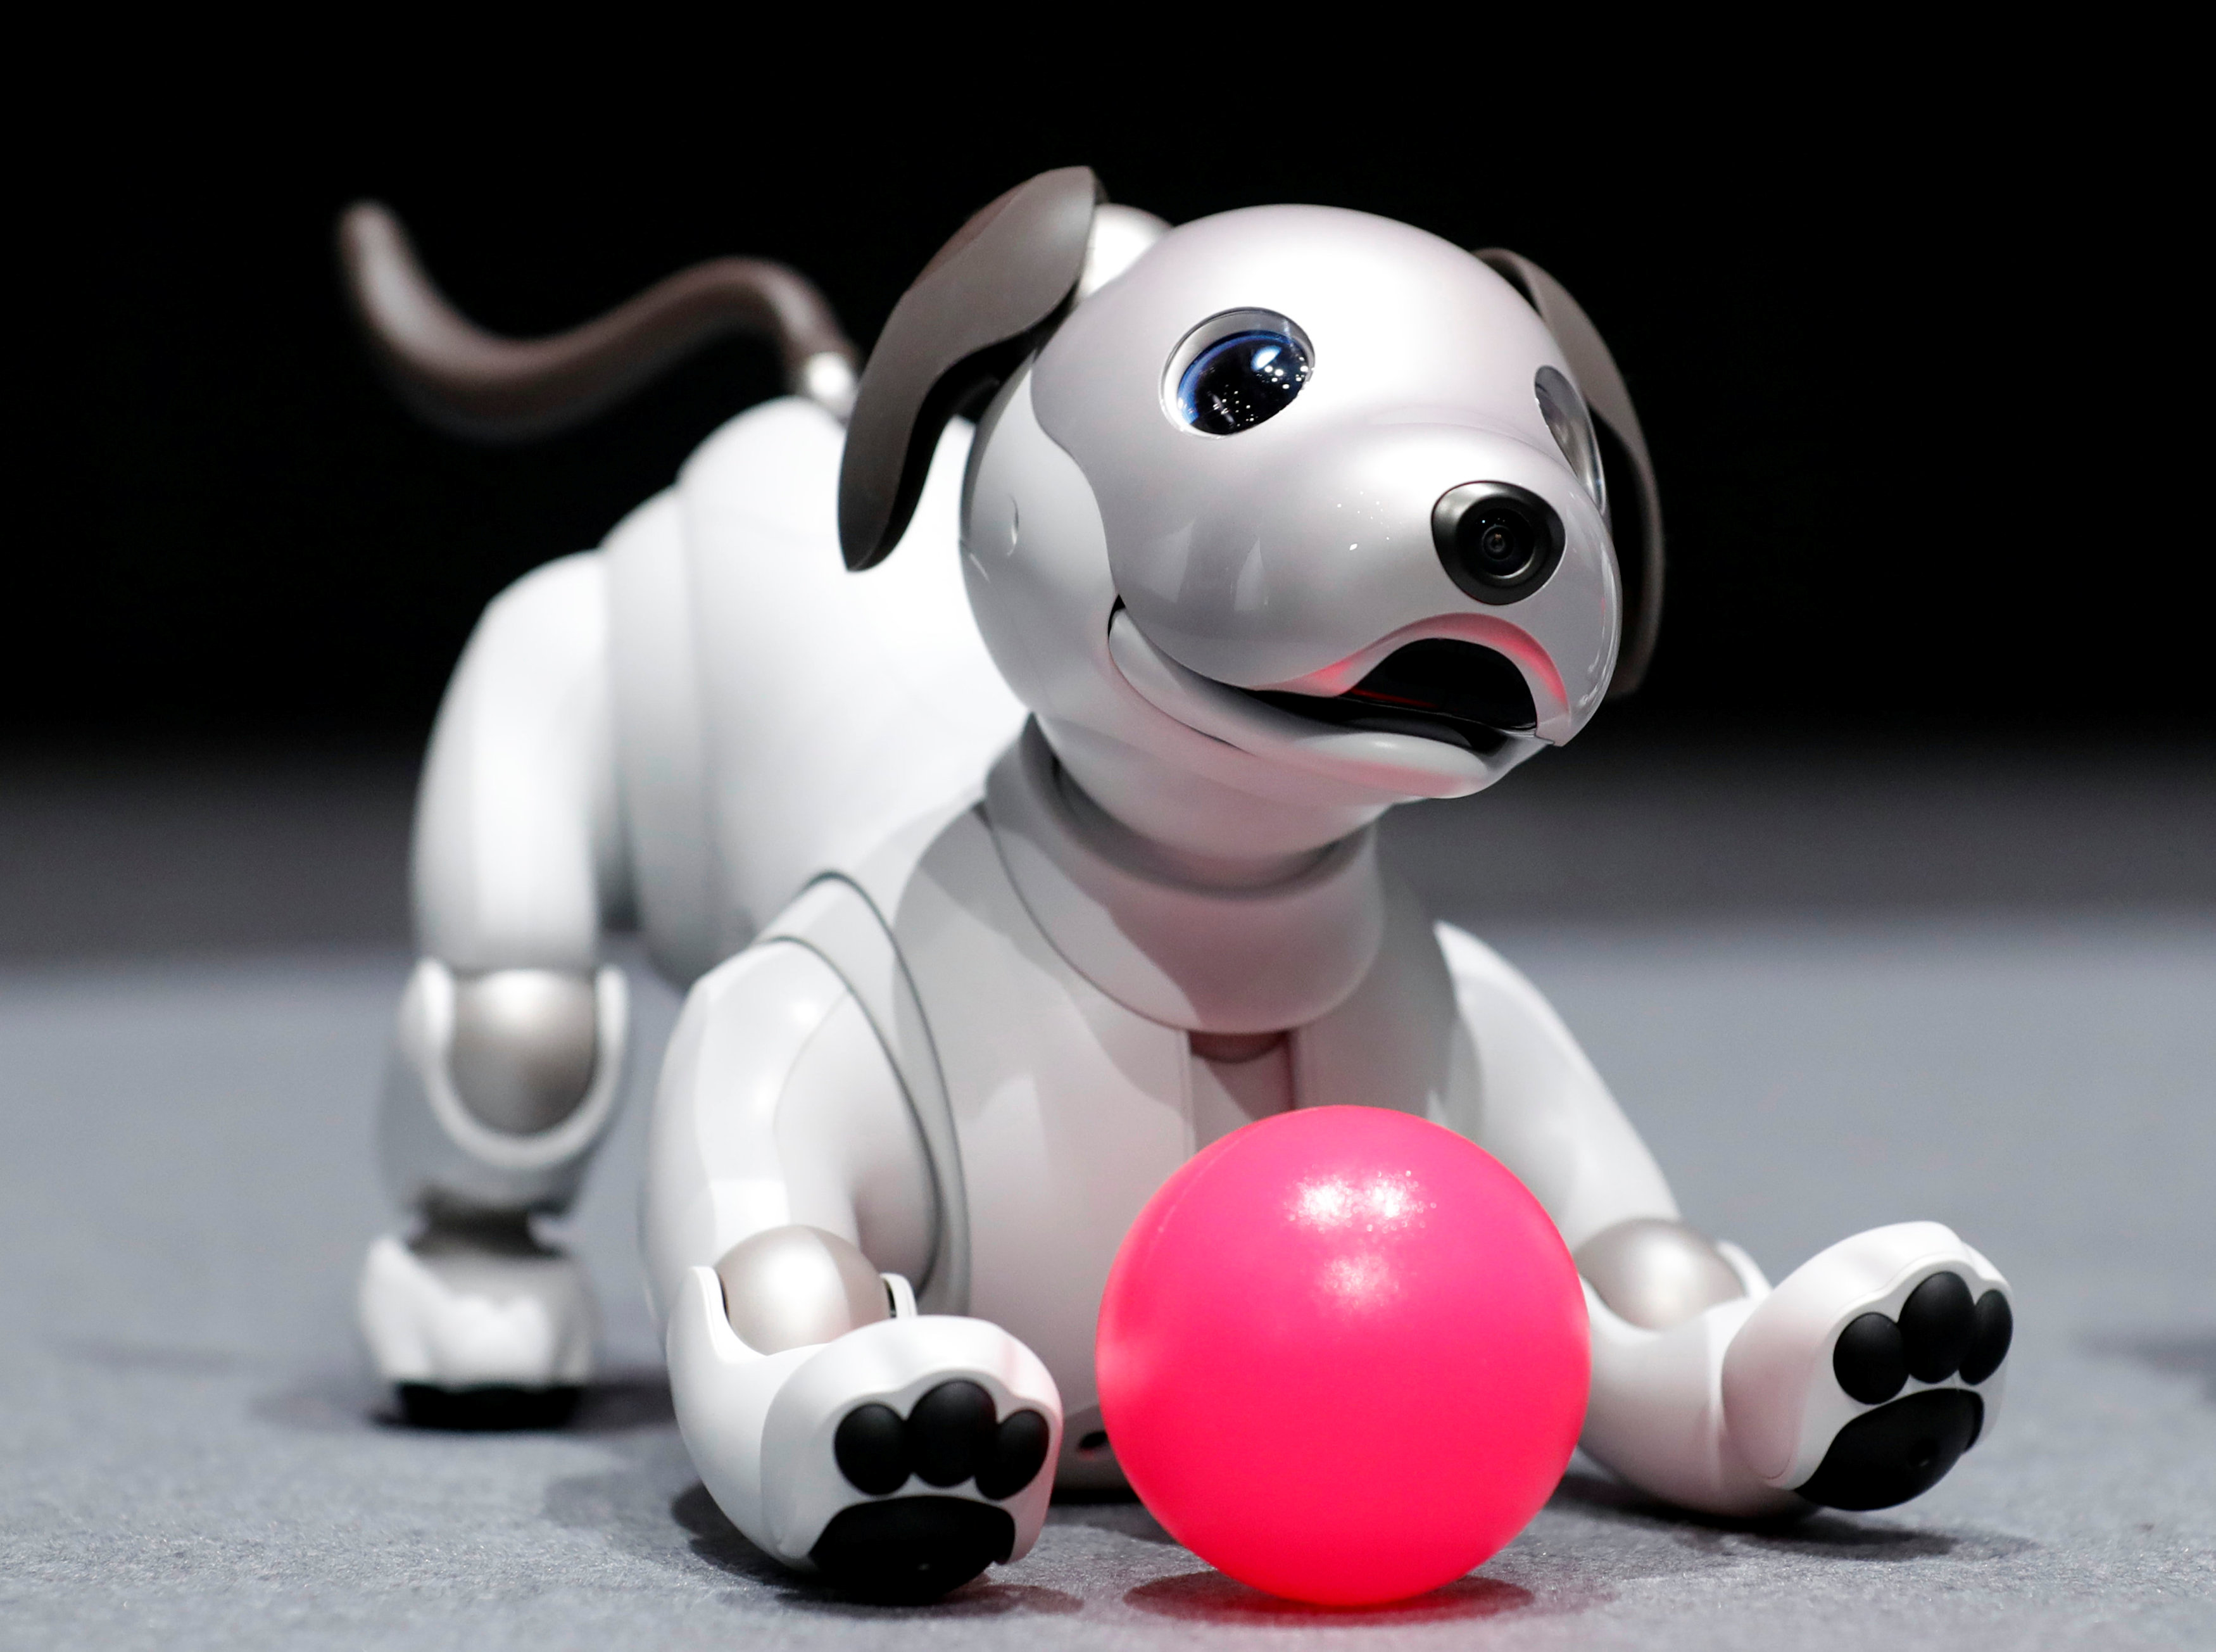 Adopta a un perro robot: la iniciativa de Sony para dar una